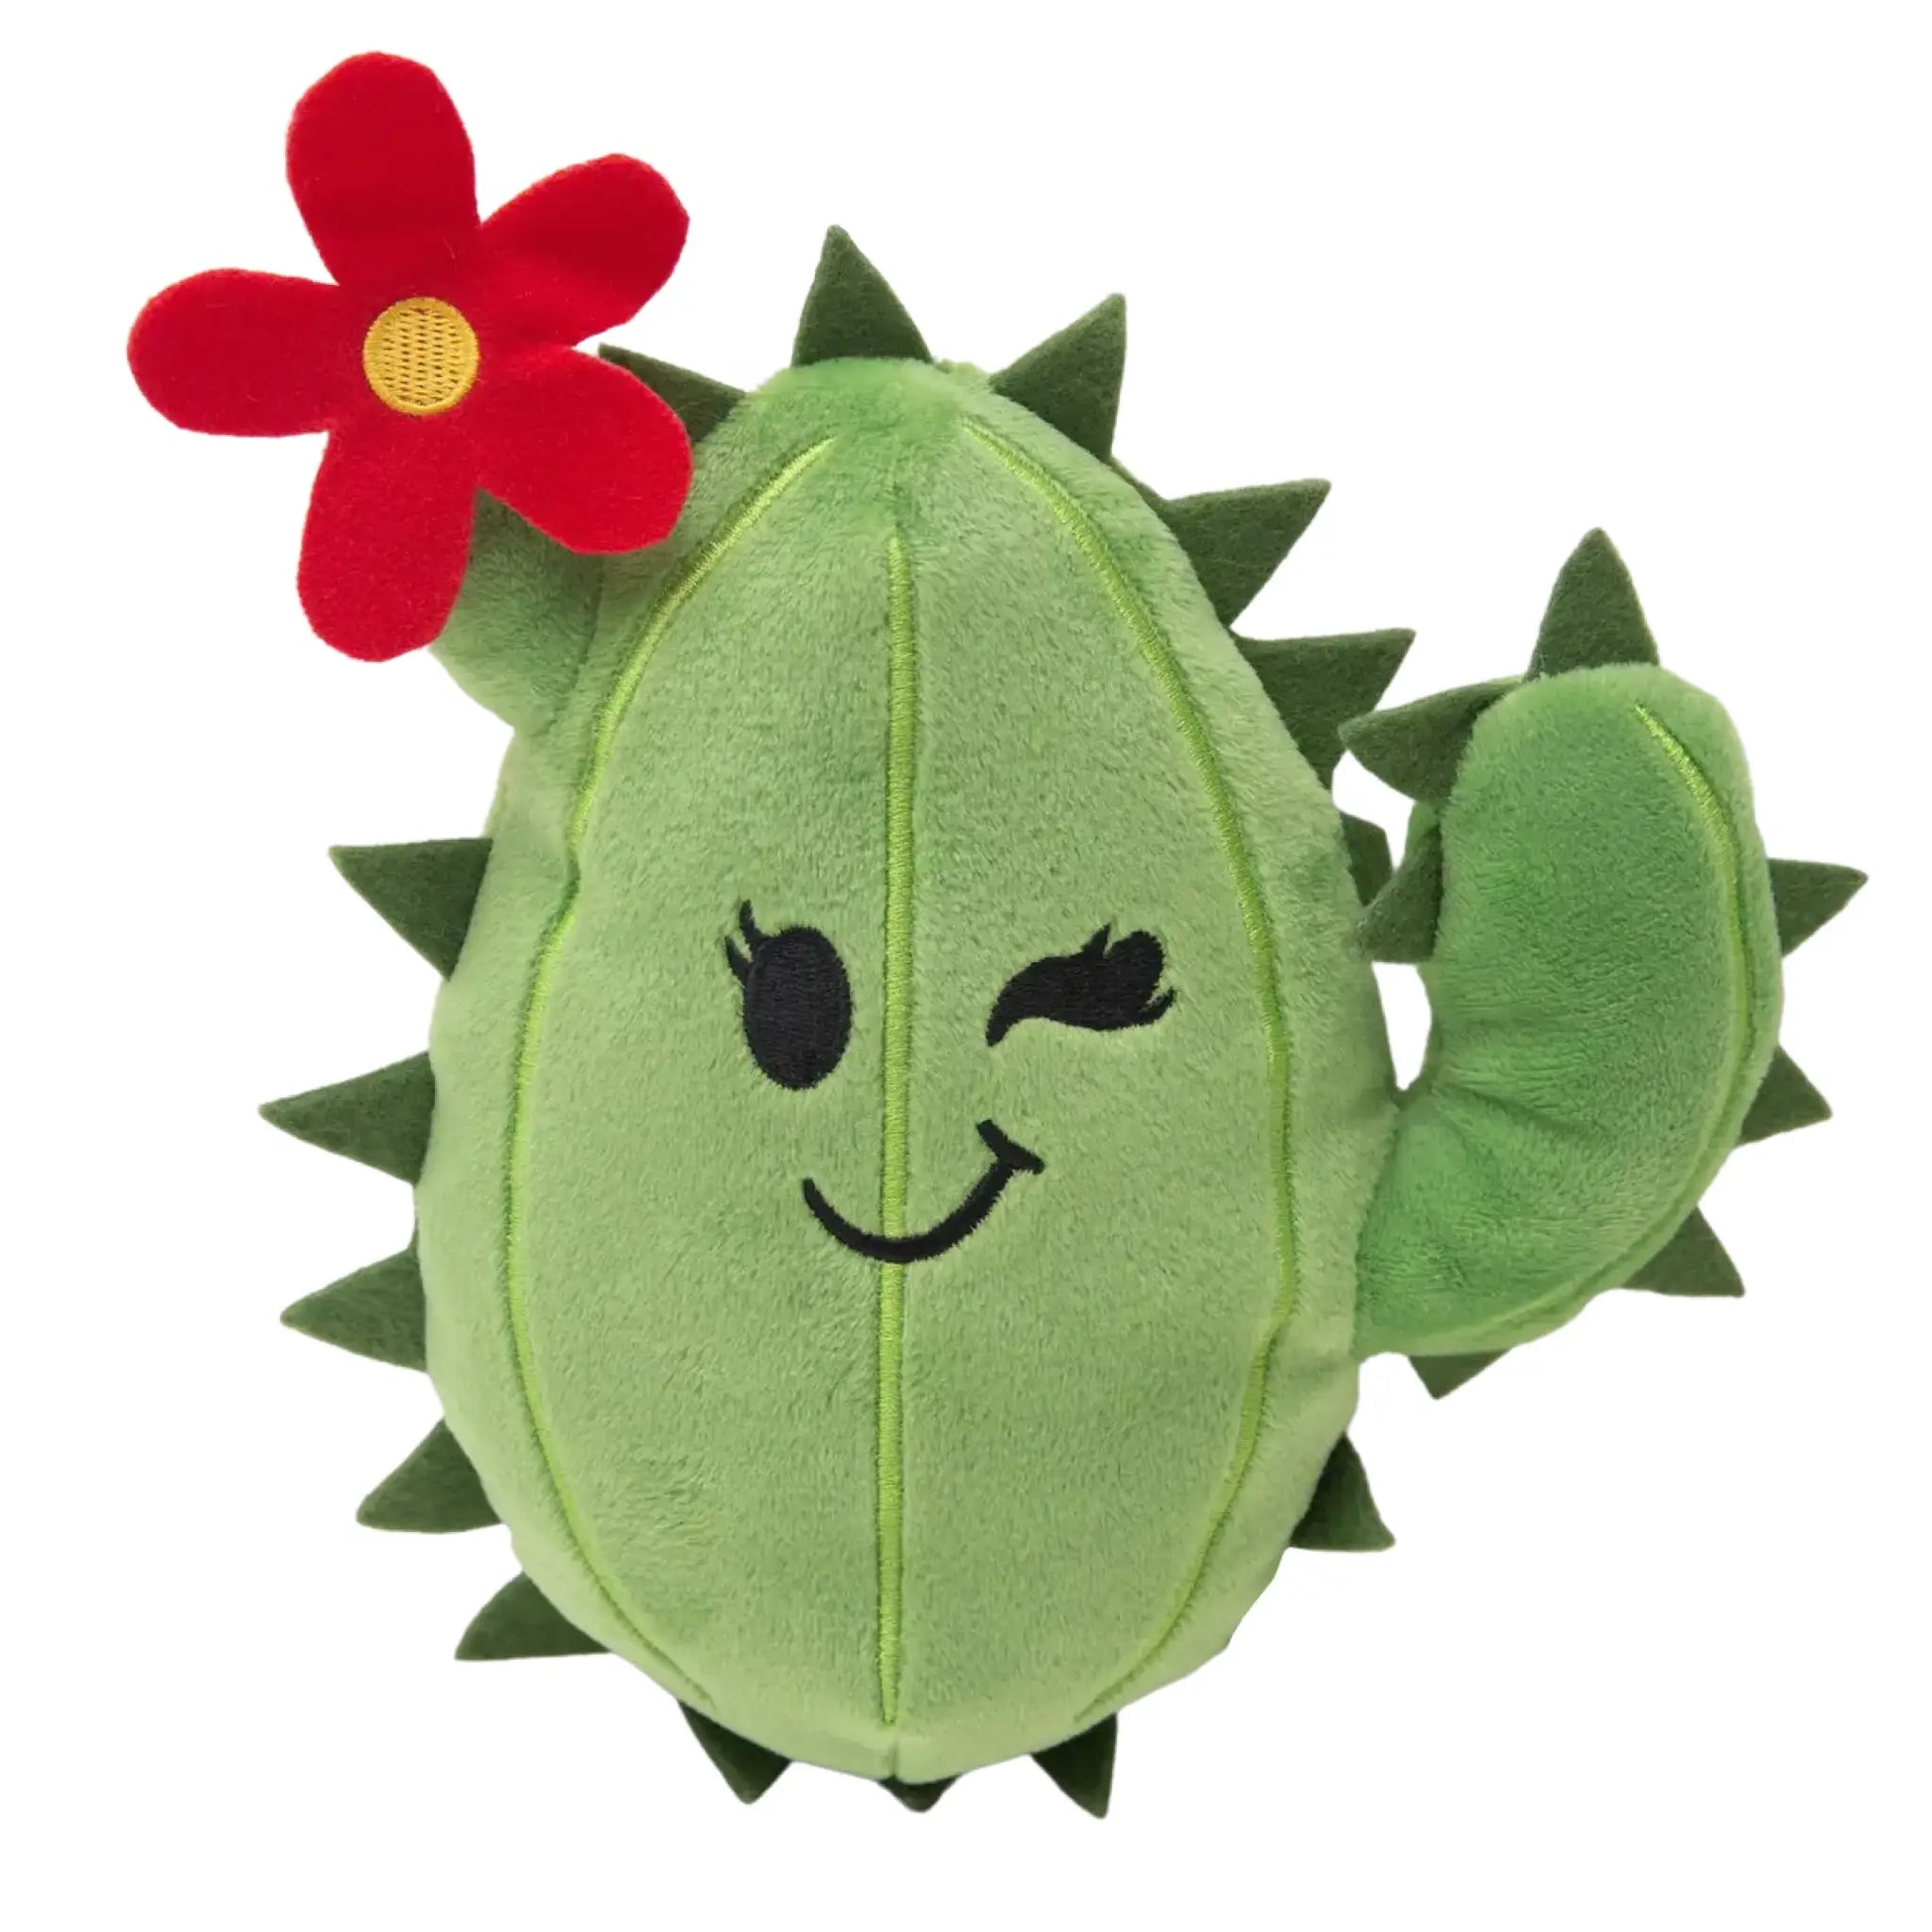 Chloe the Cactus dog toy - Art